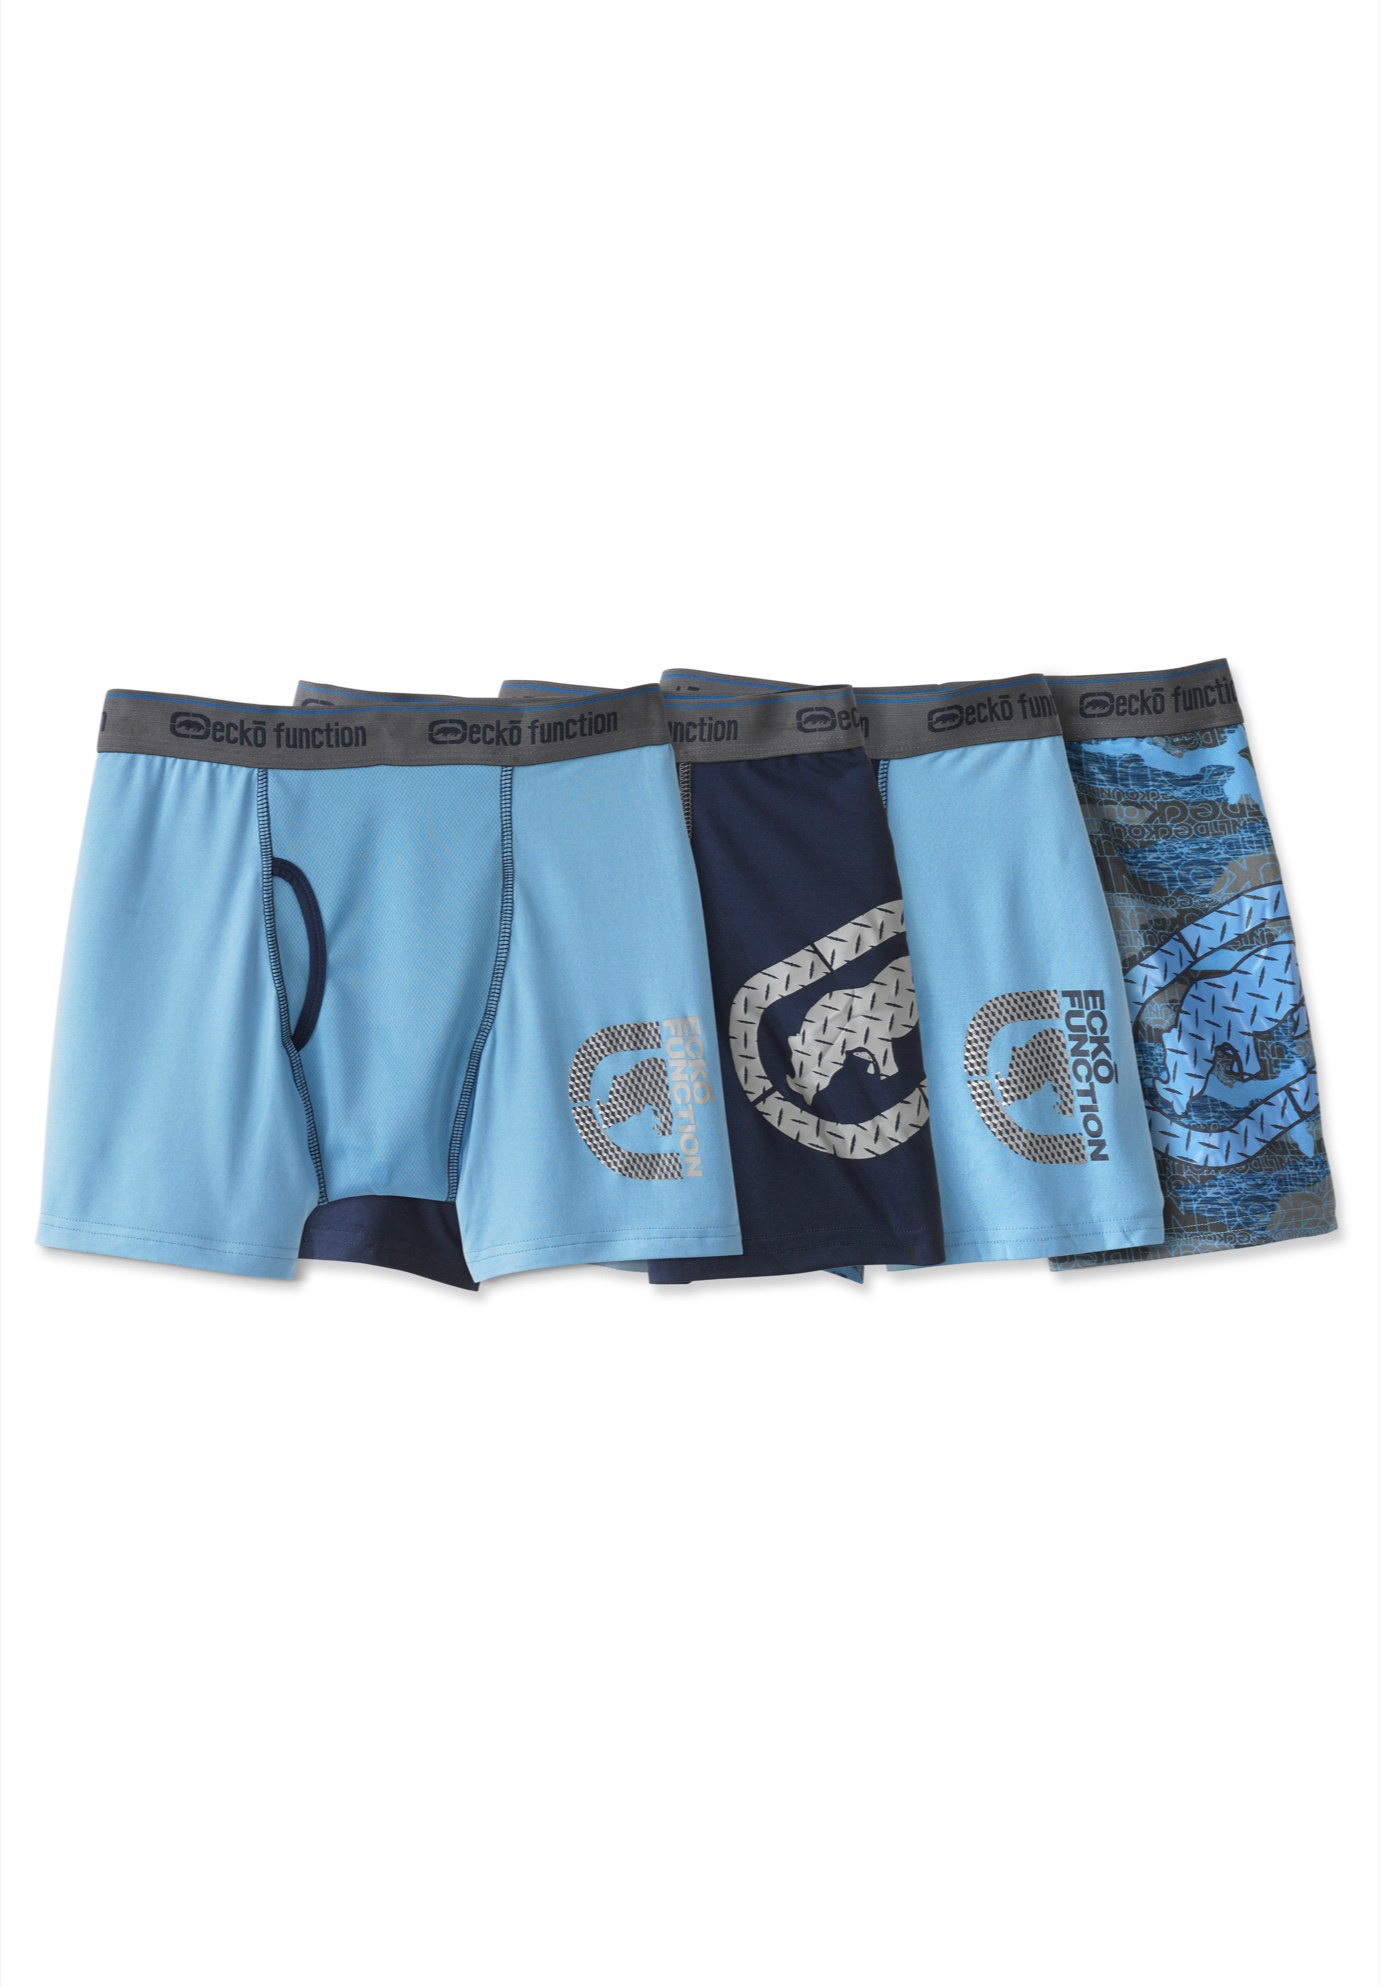 Ecko Jersey Boxer Briefs Underwear, 4-pack, 